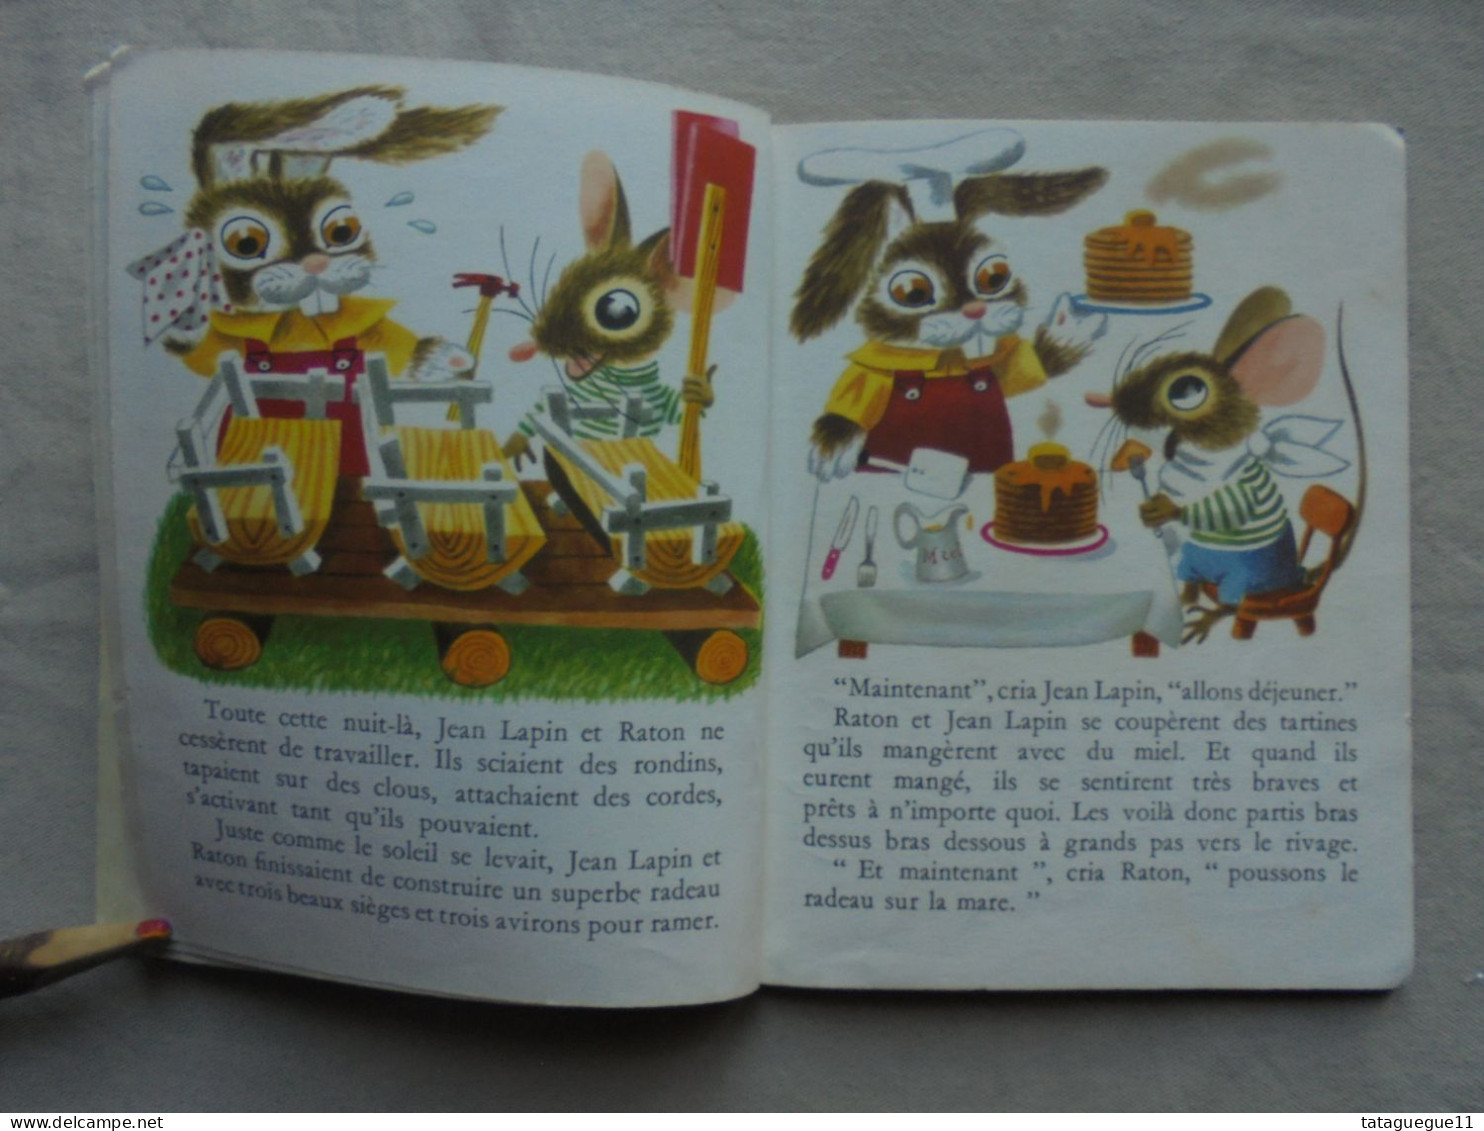 Ancien - Un Petit Livre d'Or Couac Le canard et ses amis Ed. Cocorico 1950